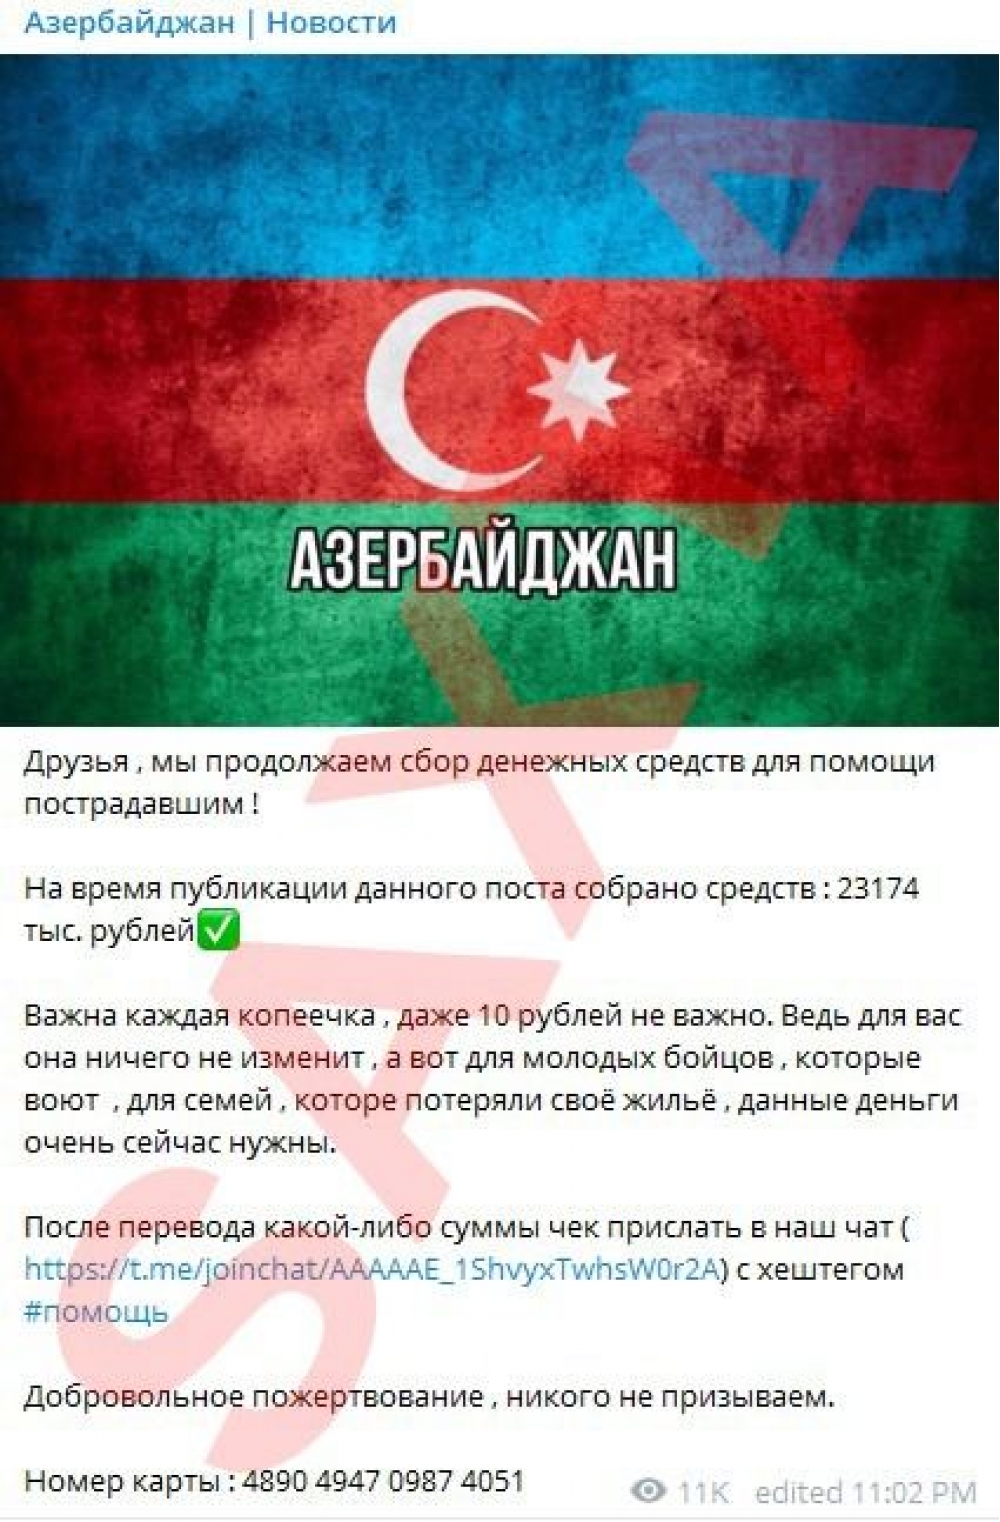 Азербайджанские названия